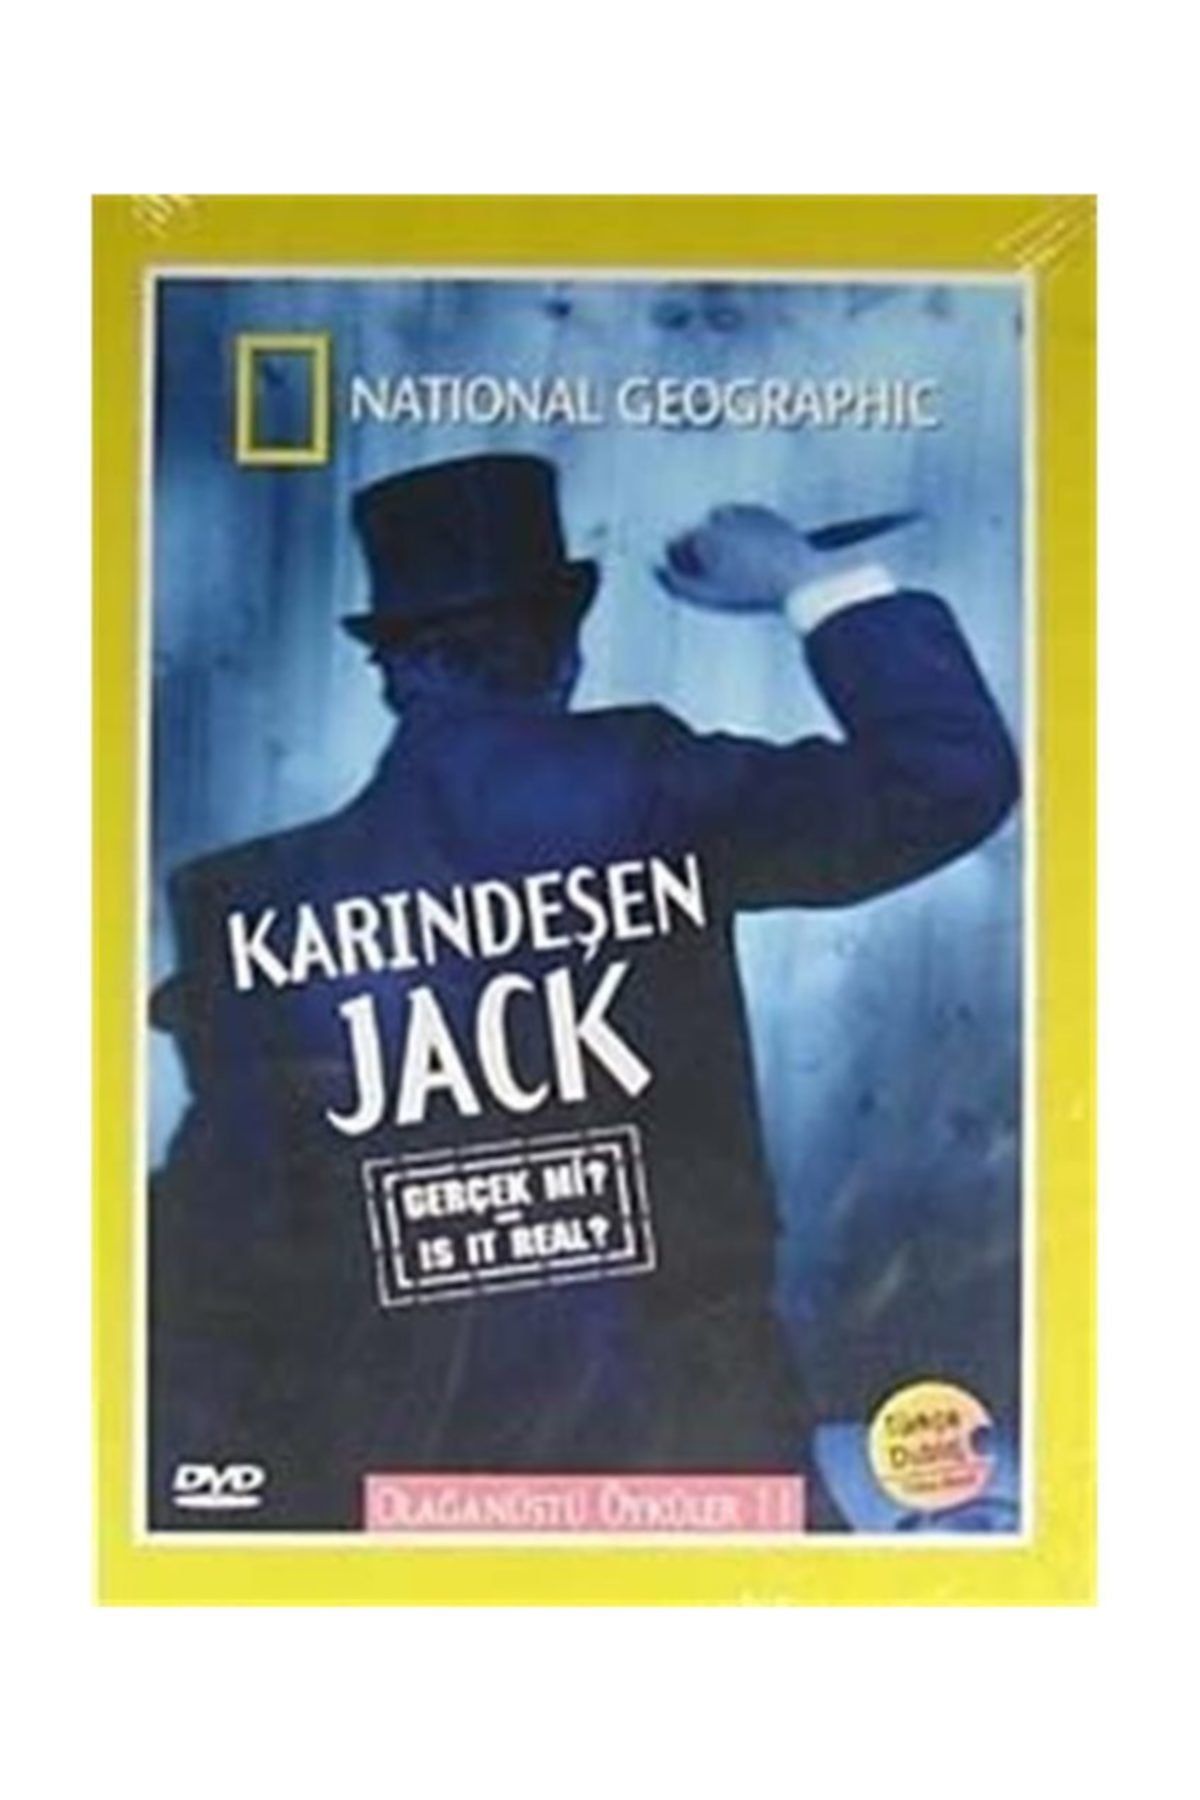 National Geographic Karındeşen Jack Gerçek Mi Olağanüstü Öyküler 11 Dvd